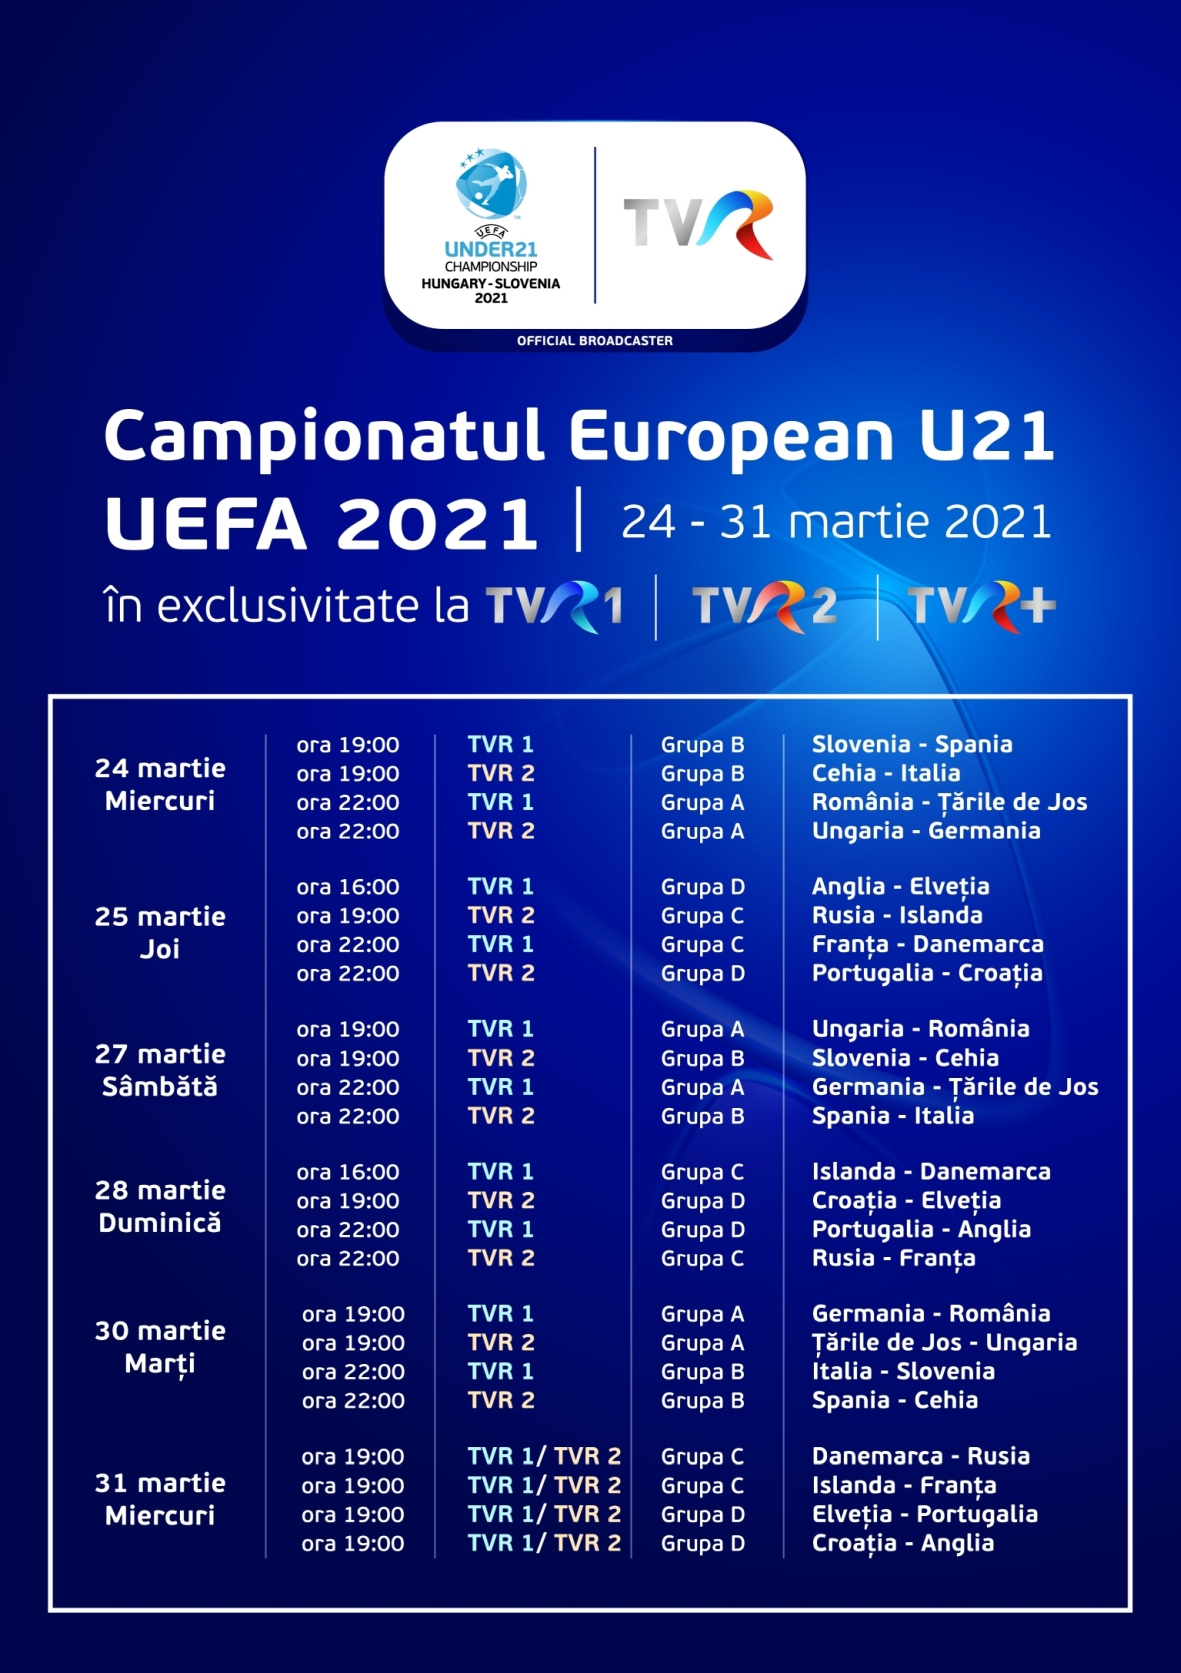 https://artpres.ro/wp-content/uploads/2021/03/Program-transmisiuni-meciuri-UEFA-EURO-U21-la-TVR.jpg